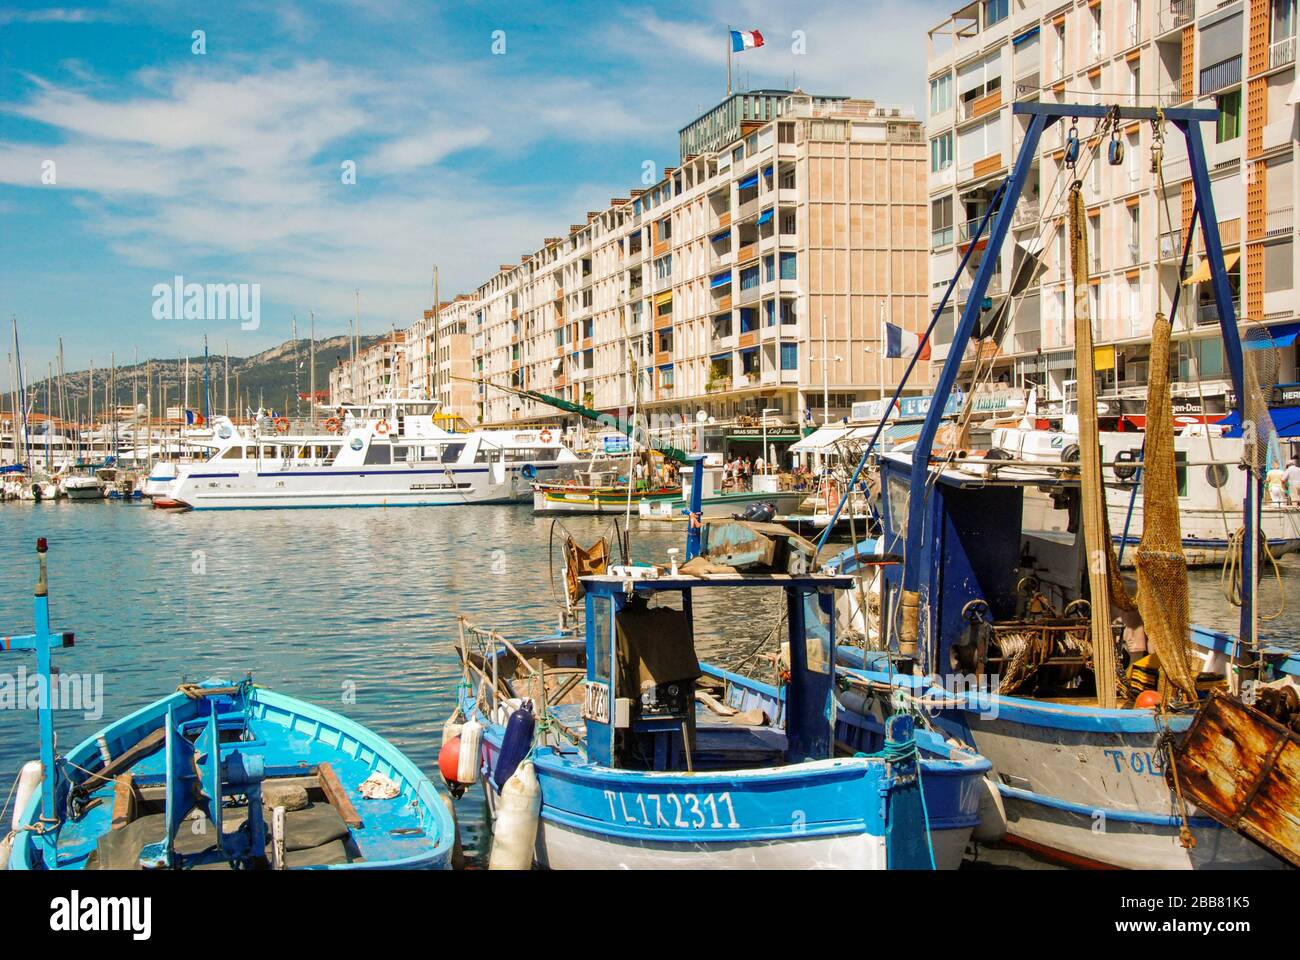 Toulon, France - septembre 2011 : bateaux de pêche dans le port de Toulon avec bâtiments en bord de mer en arrière-plan Banque D'Images